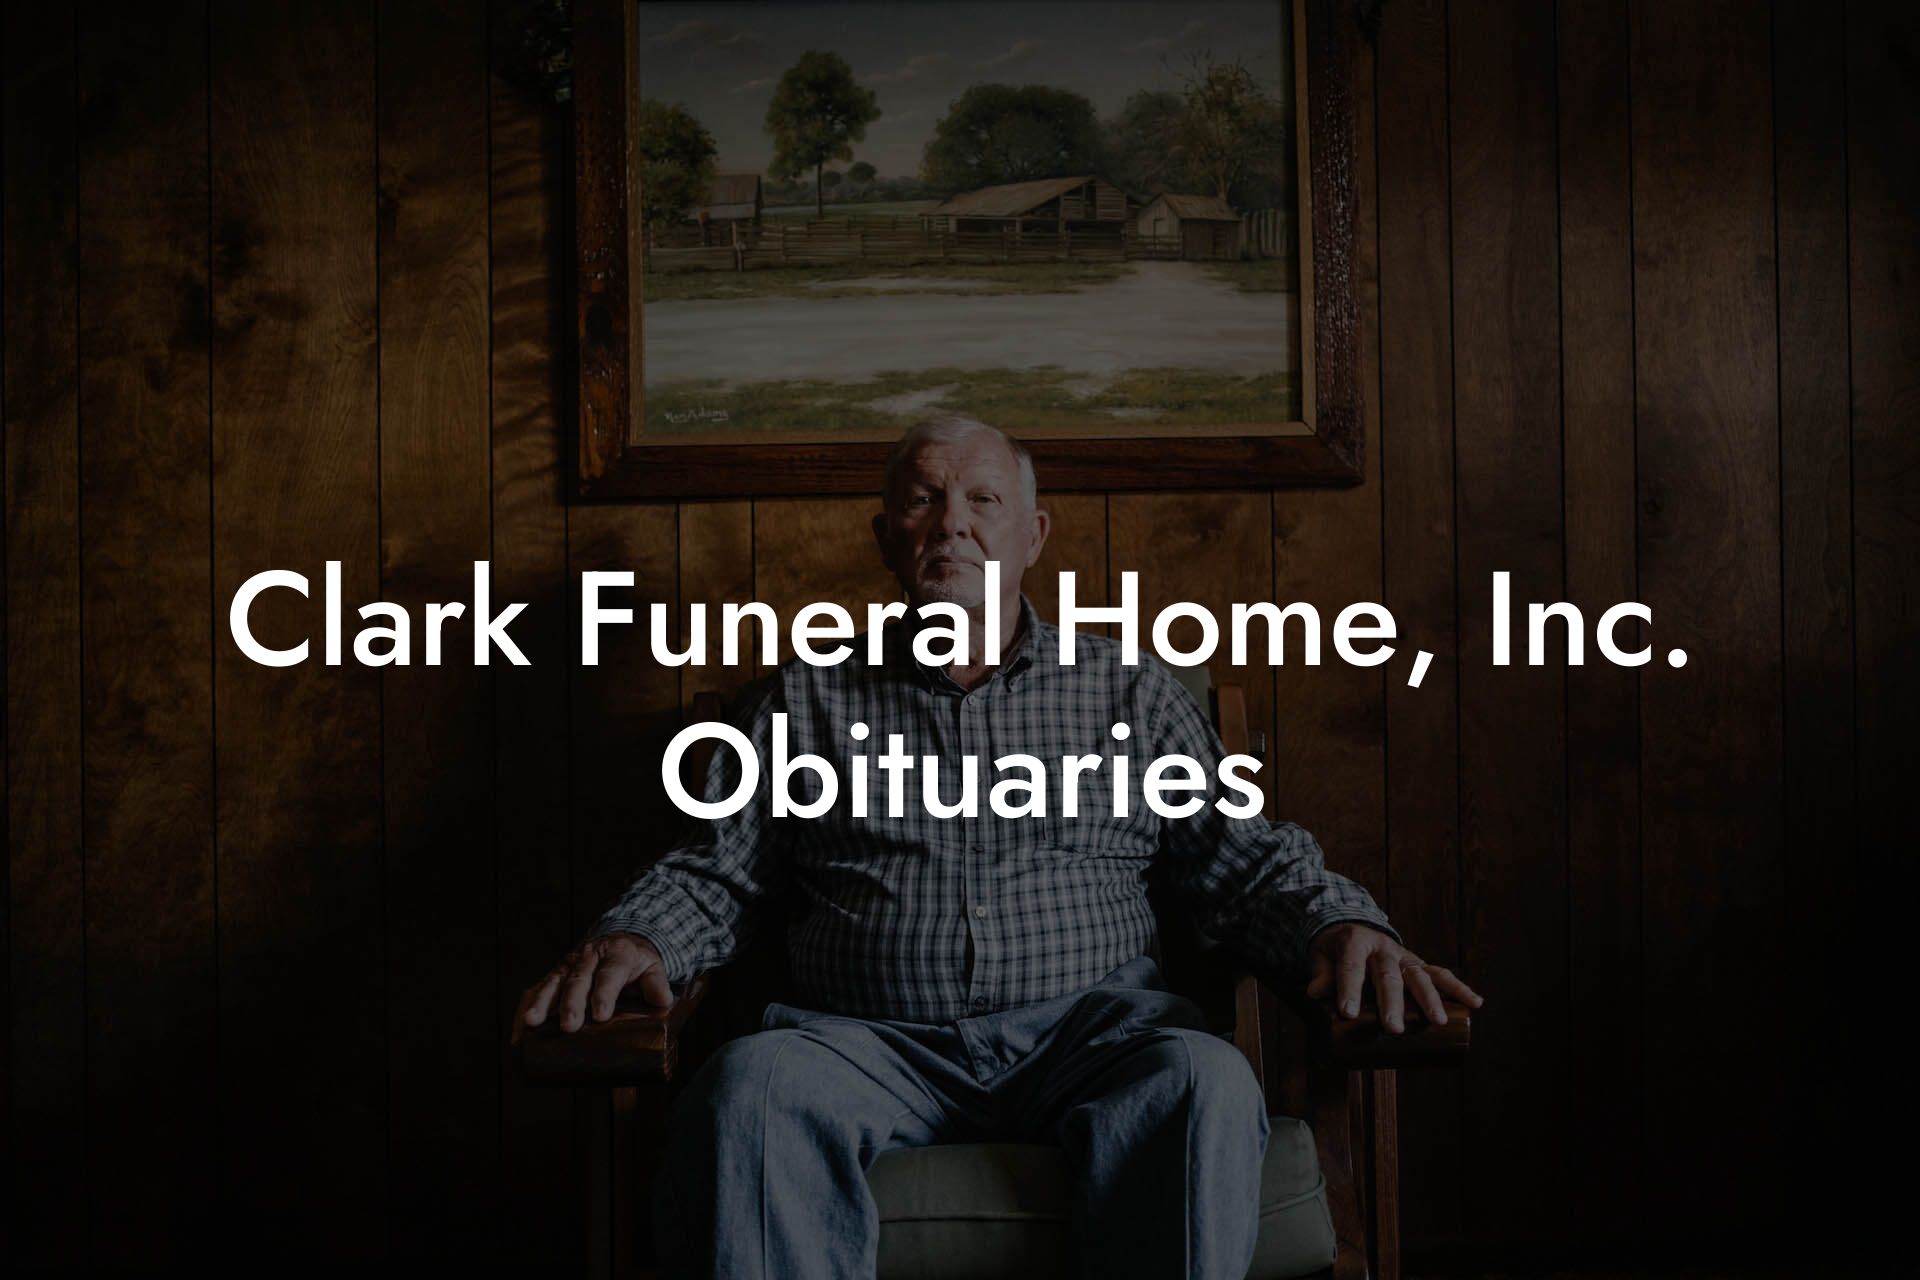 Clark Funeral Home, Inc. Obituaries